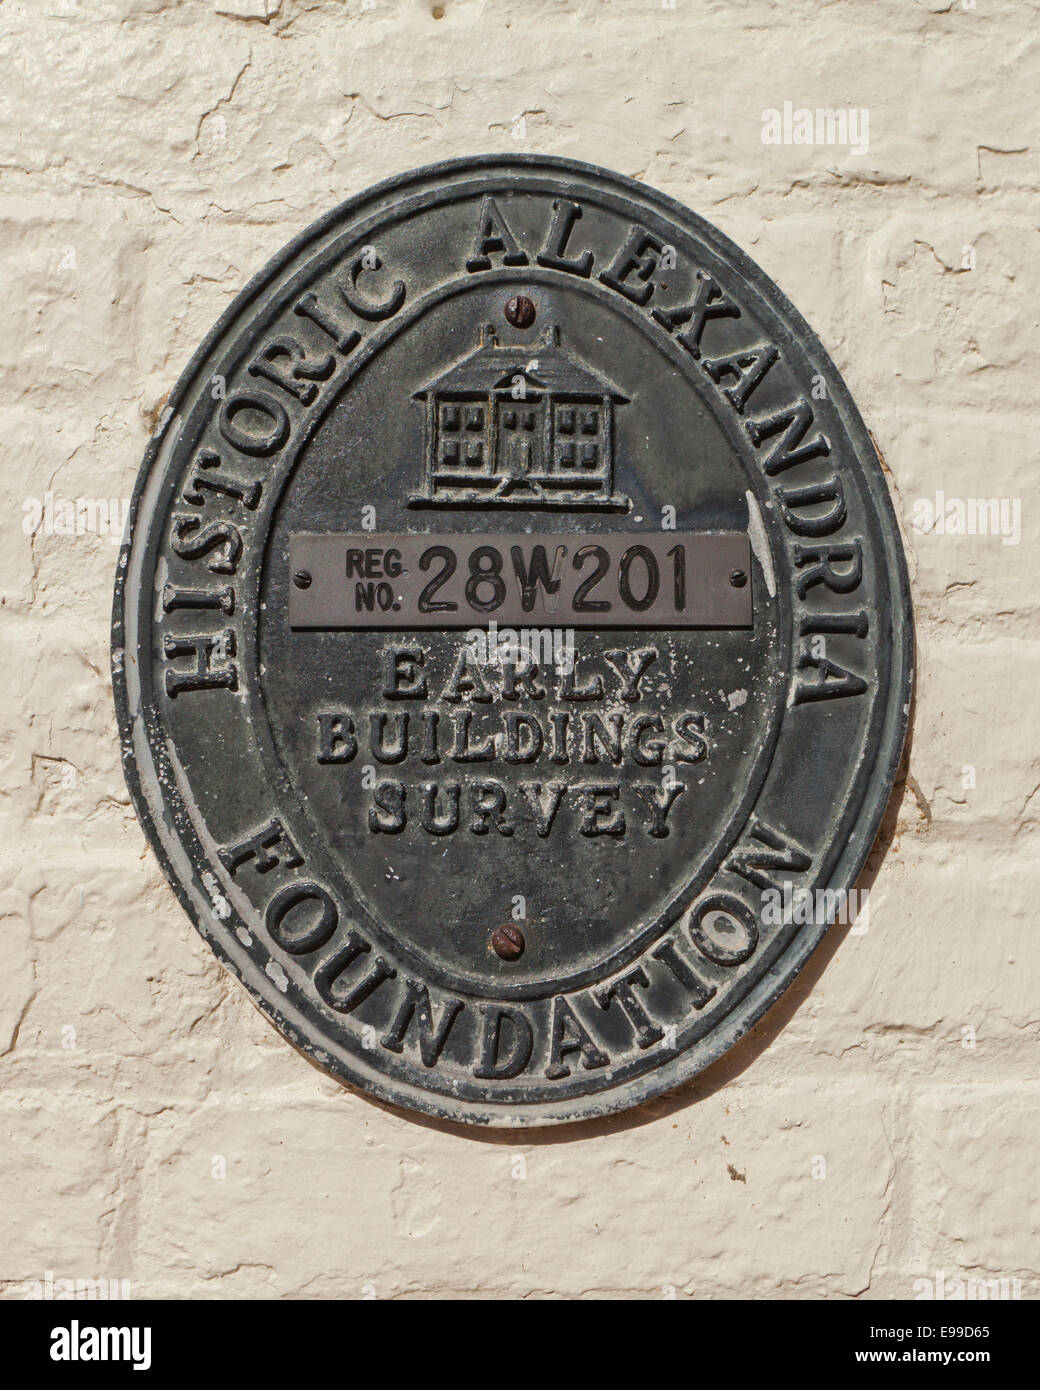 Edificio histórico plaque - Alexandria, Virginia, EE.UU. Foto de stock